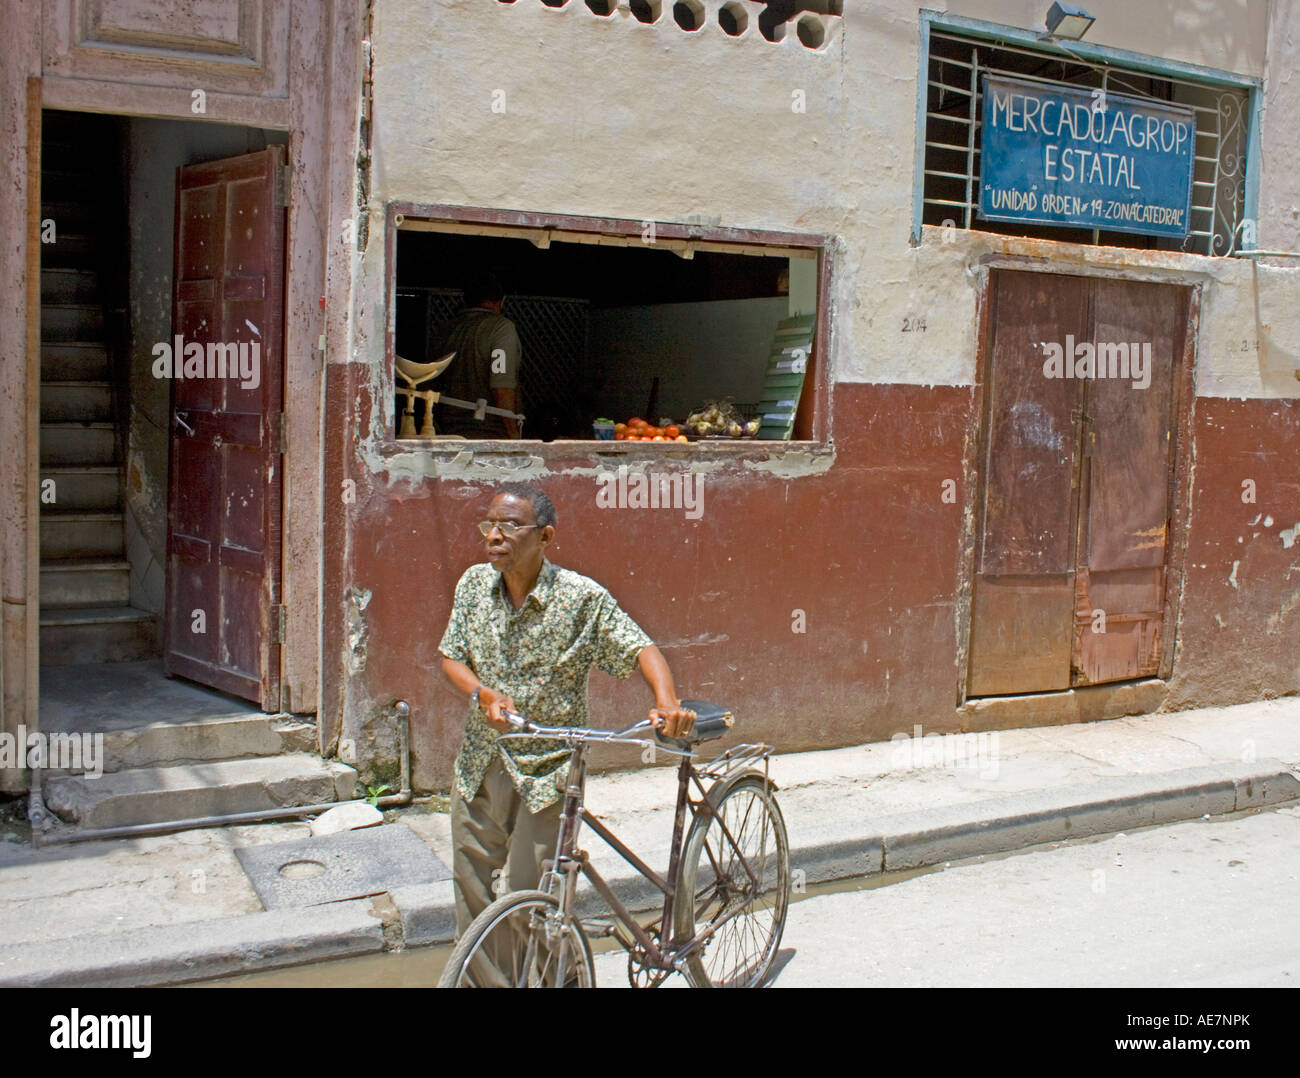 Secteur de l'état du marché de l'alimentation, La Havane Vieja, La Havane, Cuba Banque D'Images